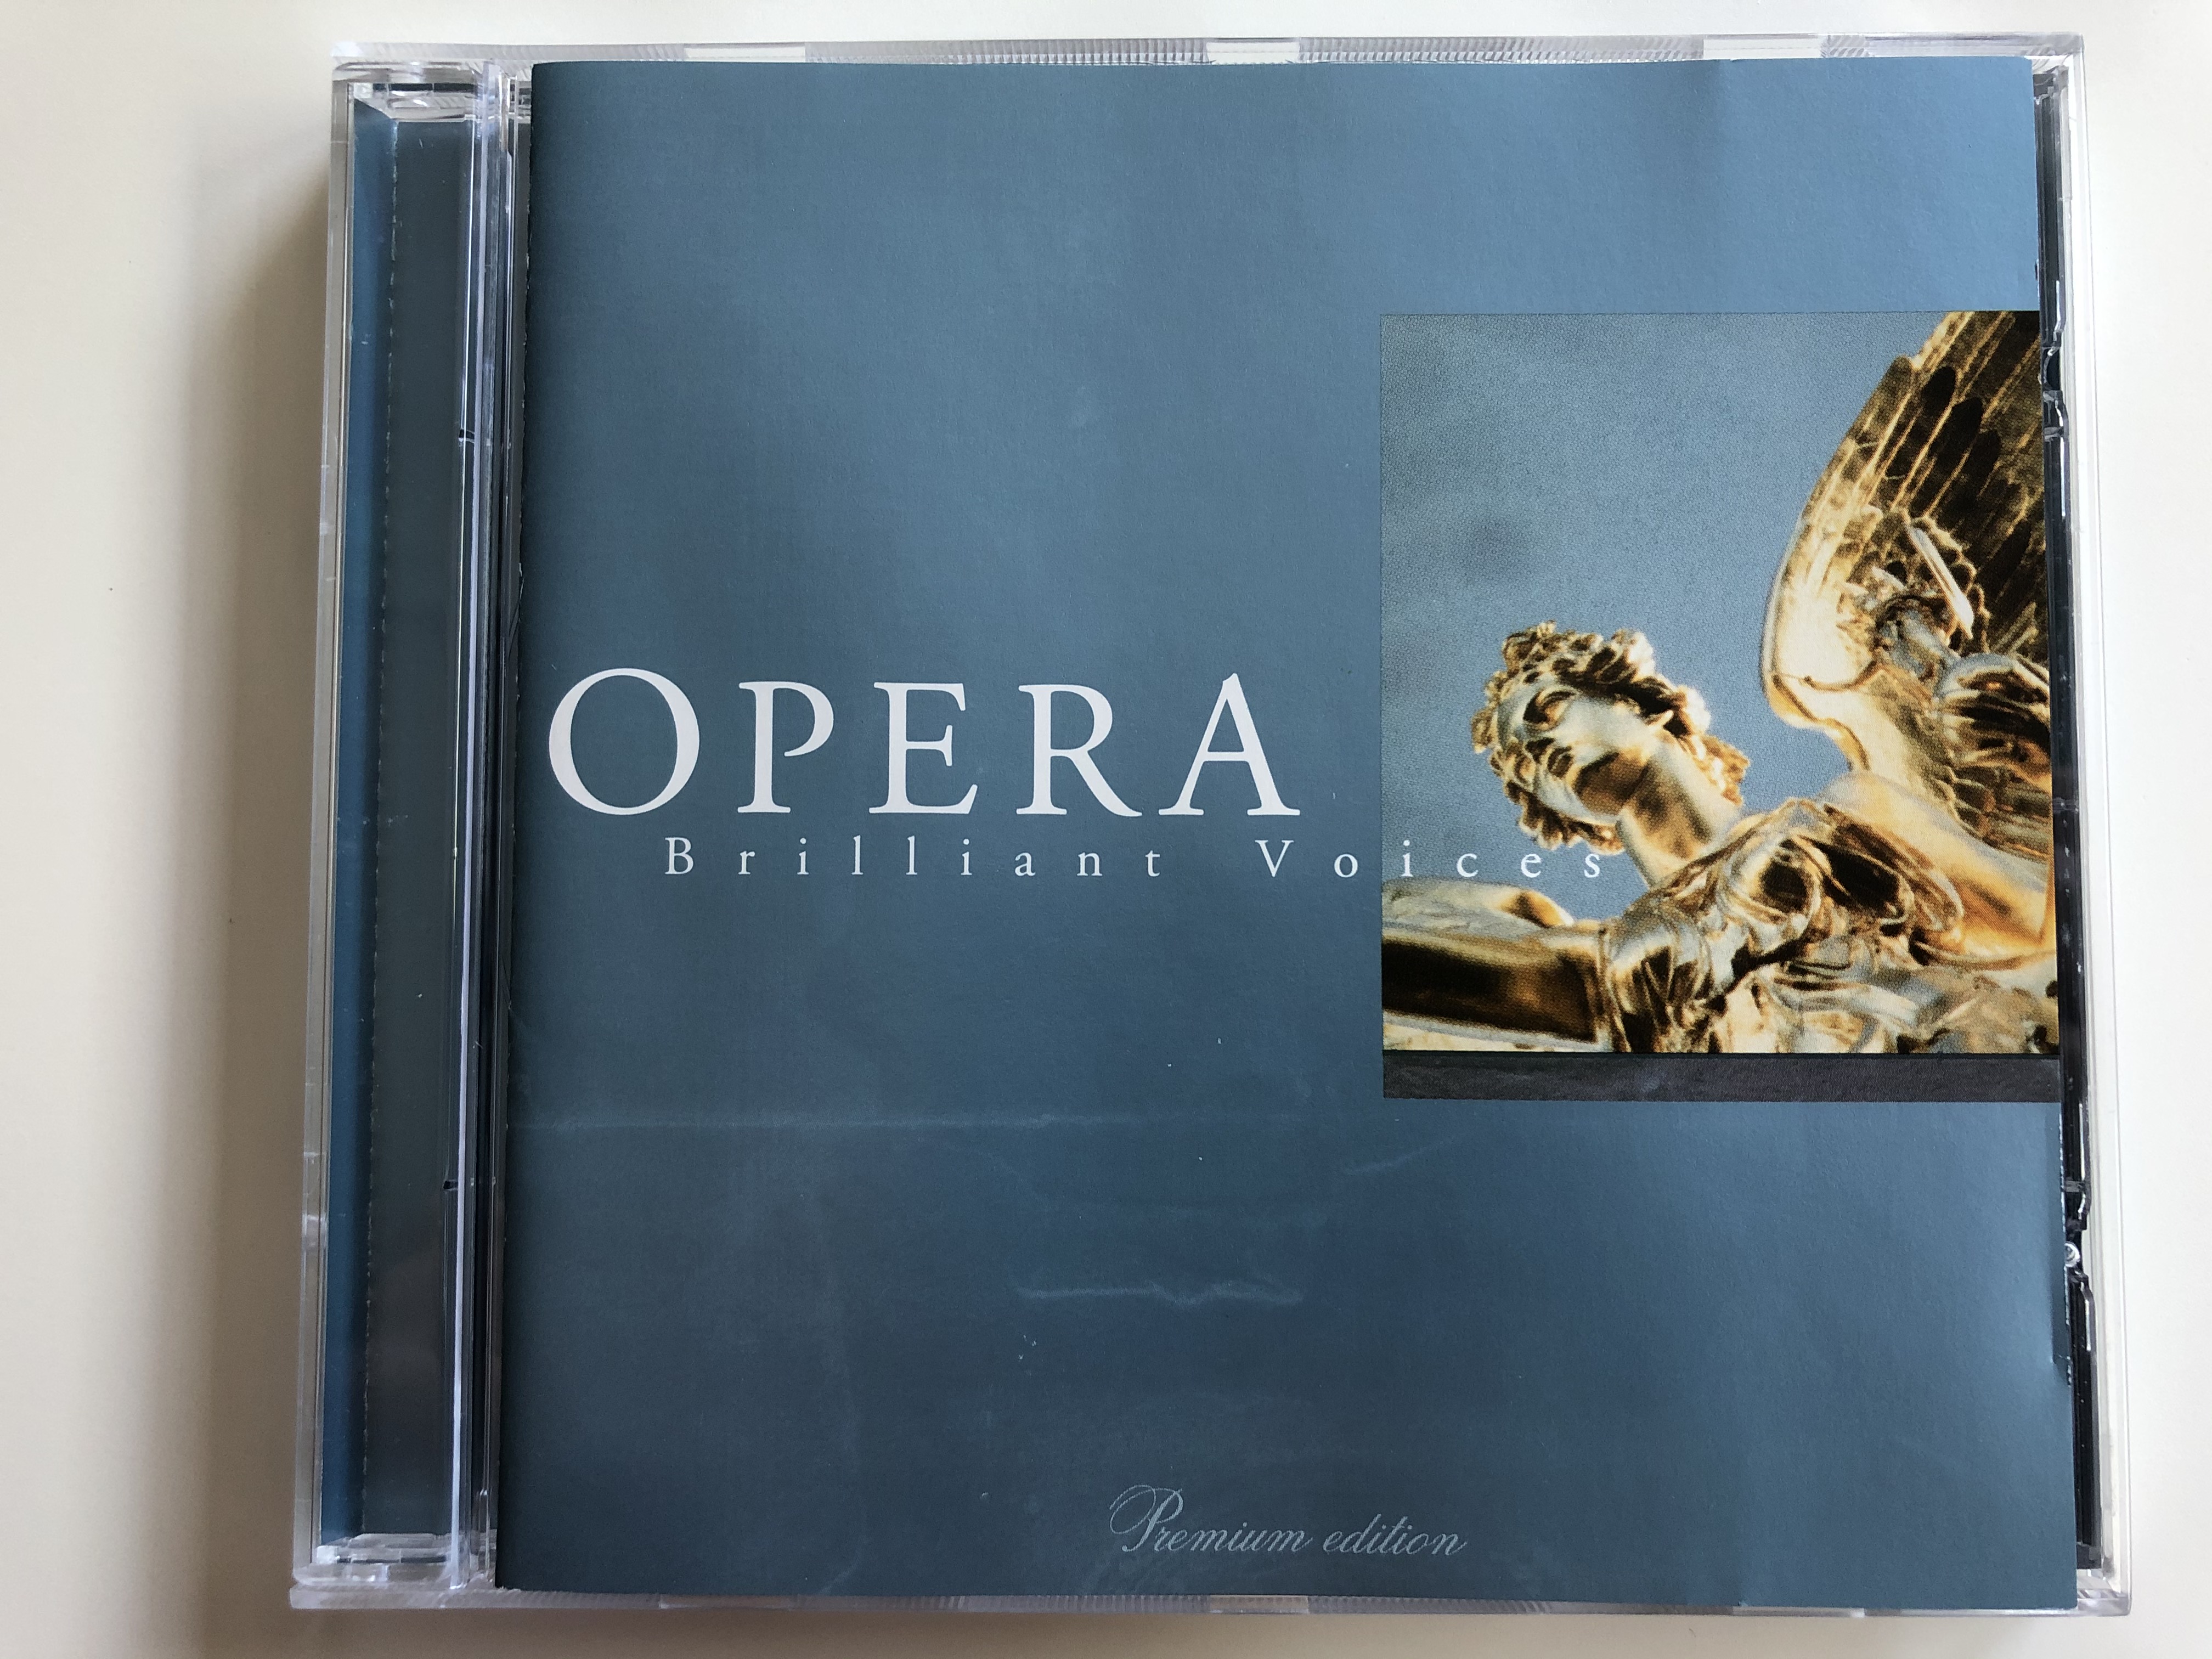 opera-brilliant-voices-music-express-audio-cd-mec-526-1-.jpg